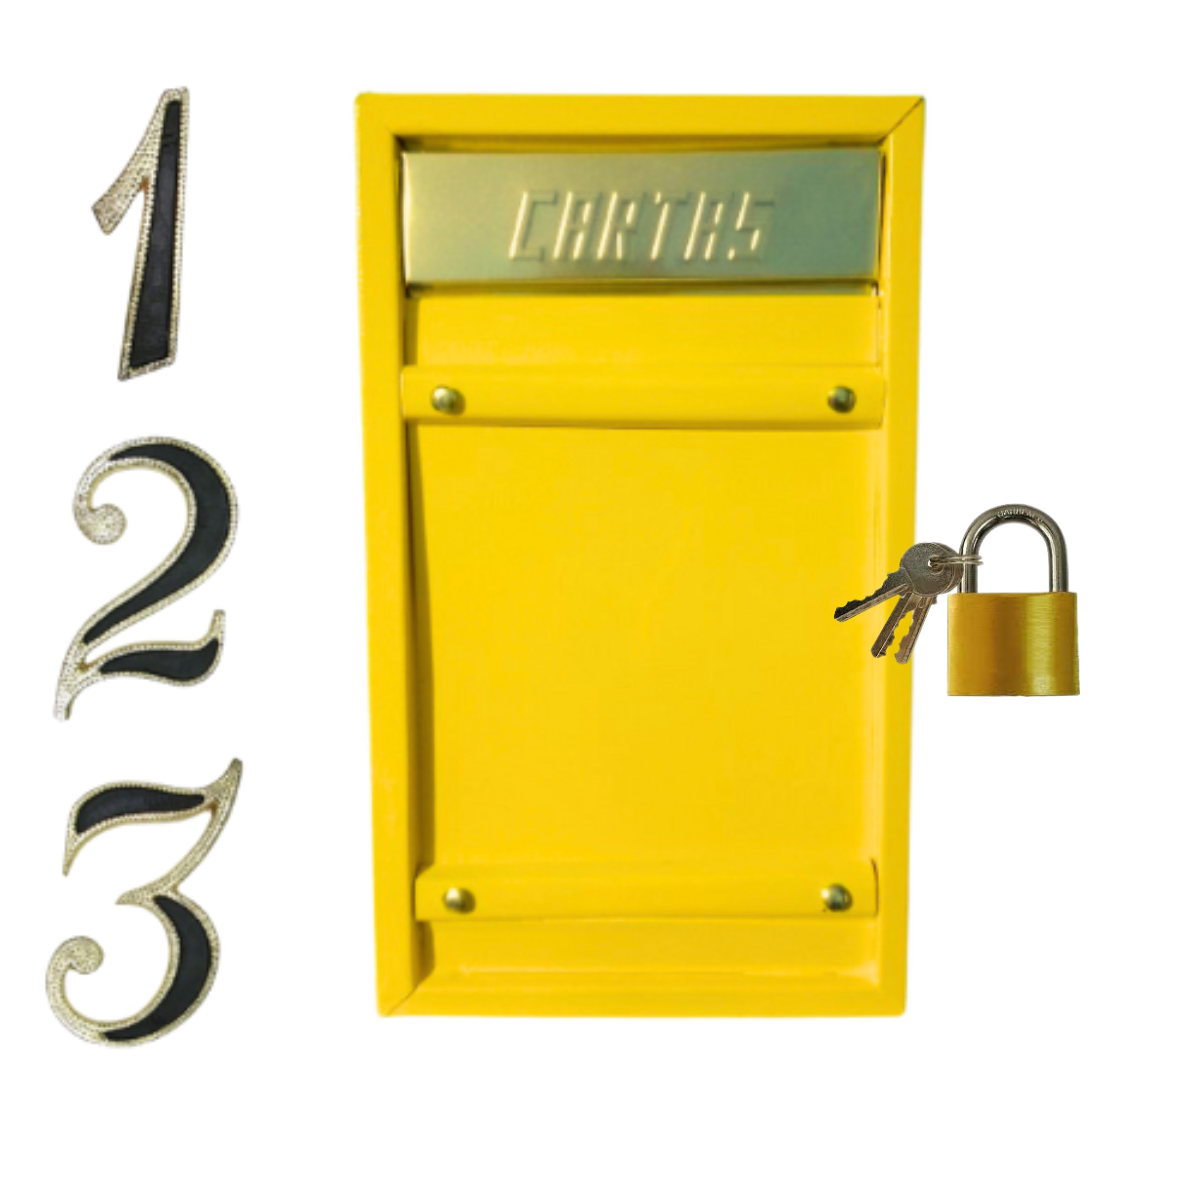 Caixa Correio Carta Grade/embuti Portão Amarela +3 Número Pvc C/cadeado